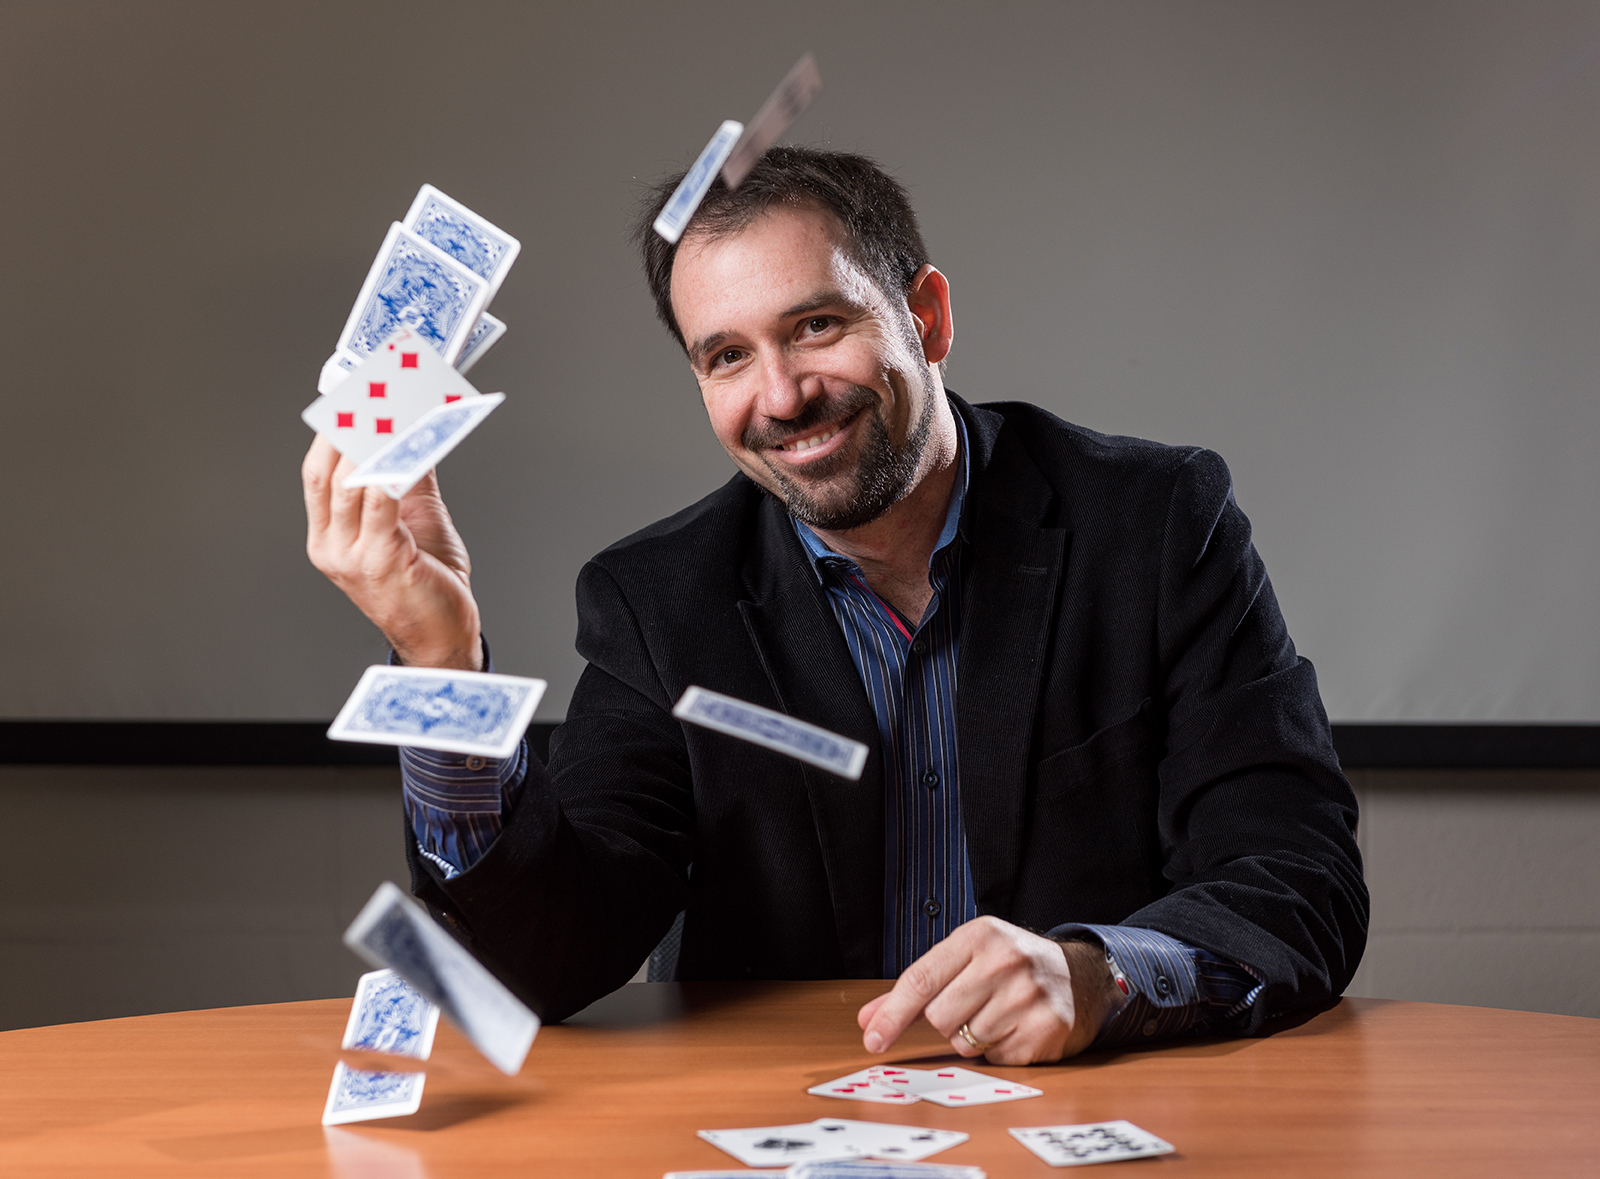 Matt Baker, professor in the School of Mathematics, is also an award-winning magician.